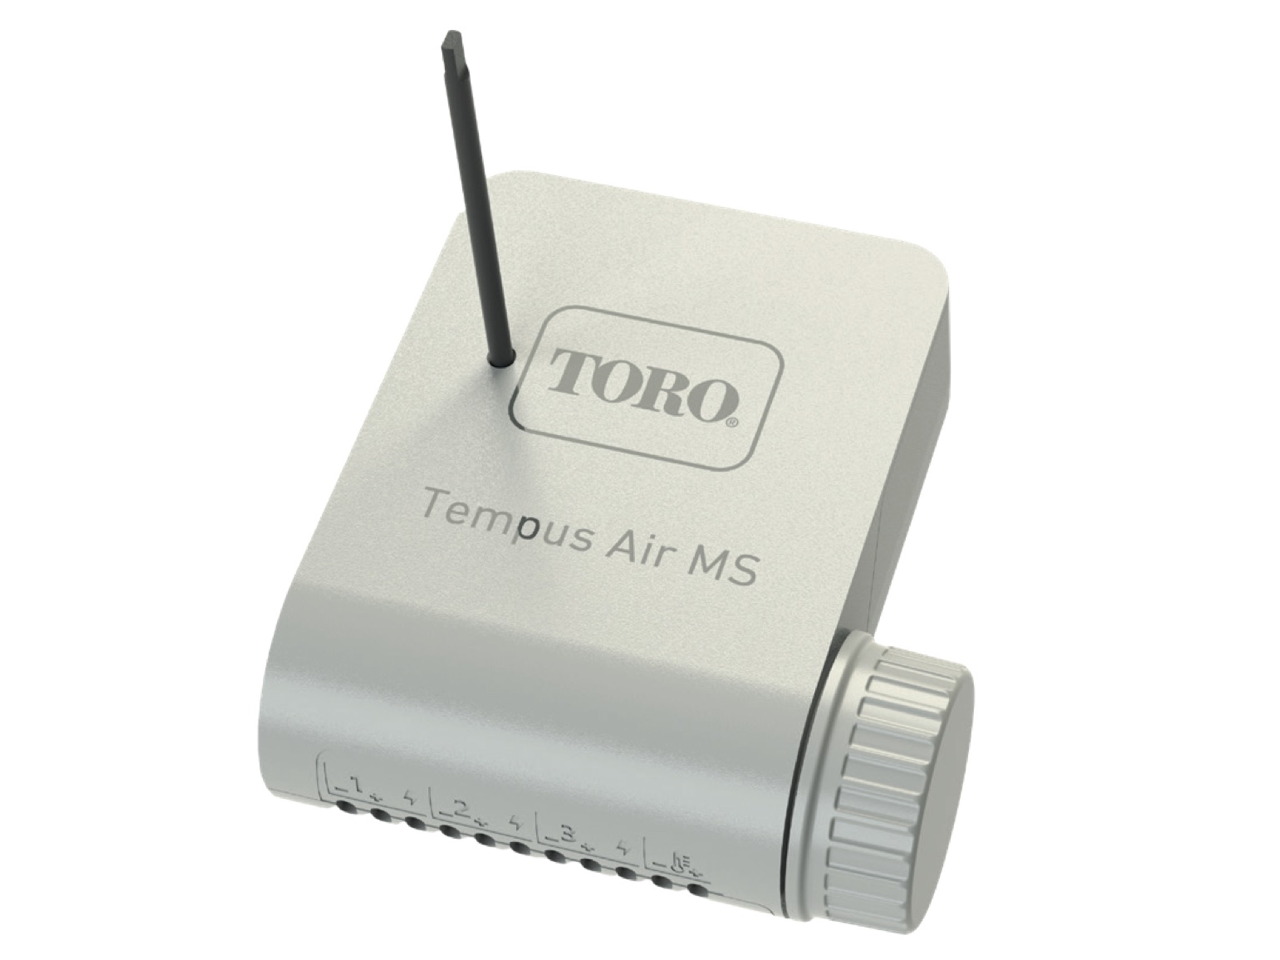 The Toro Company Tempus Air MS Tempus Air MS